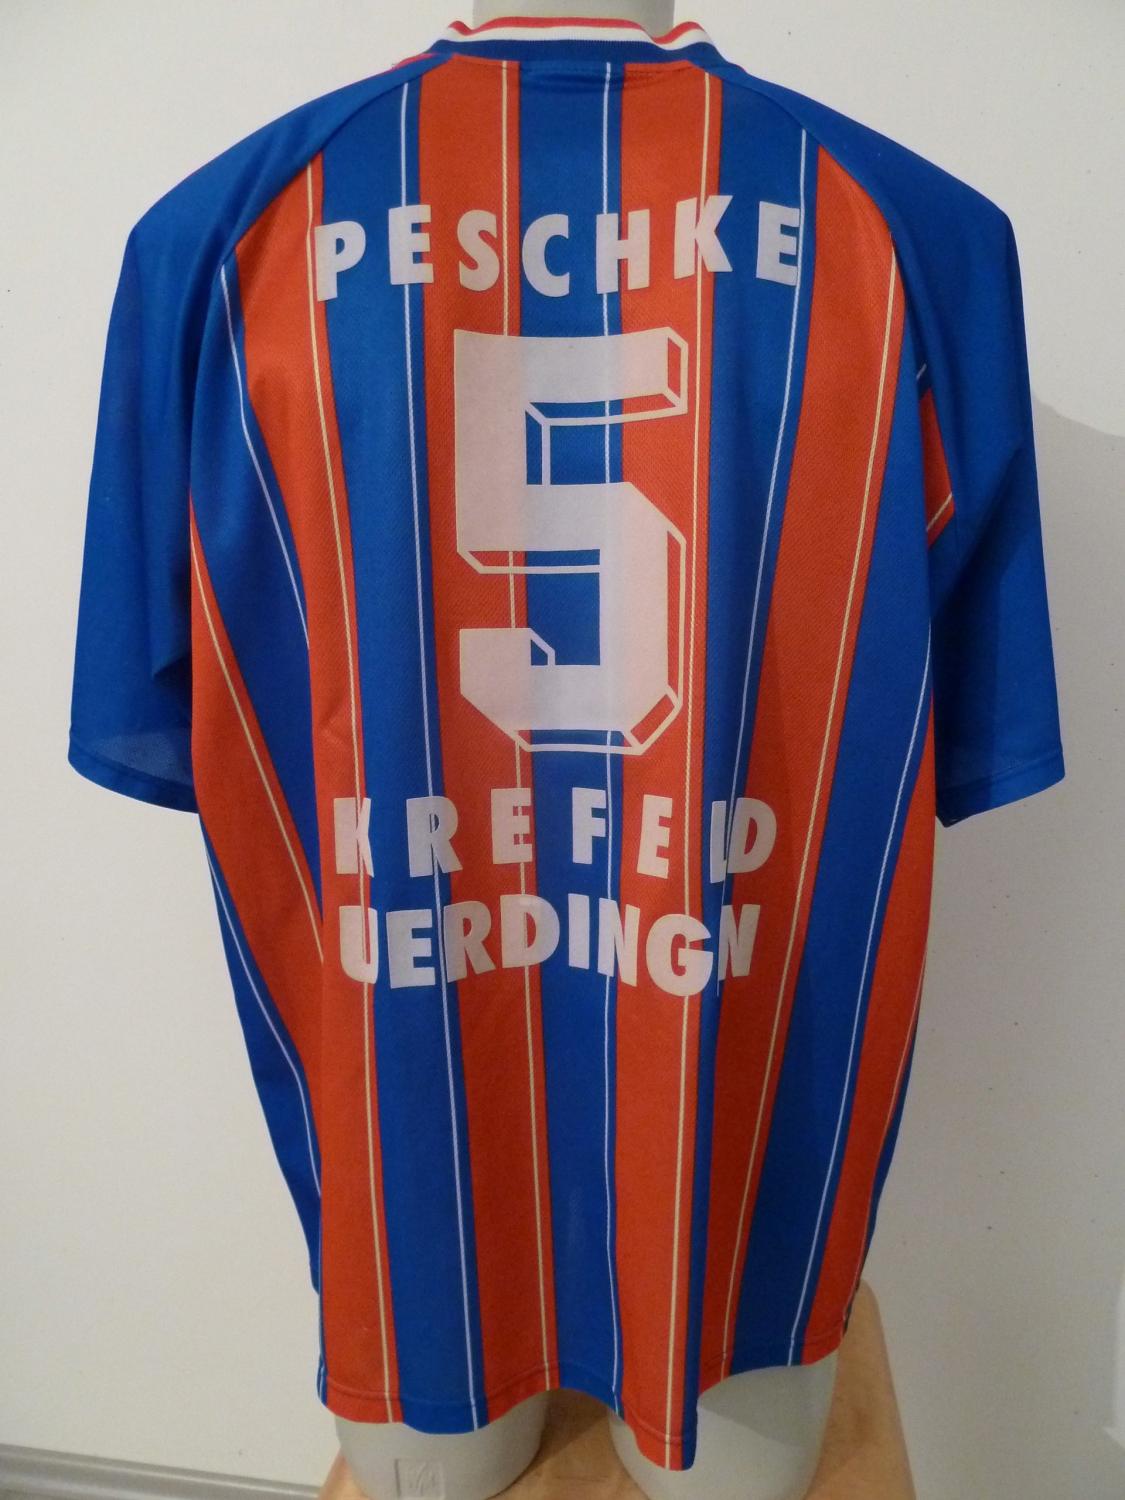 maillot de kfc uerdingen 05 domicile 1995-1996 pas cher